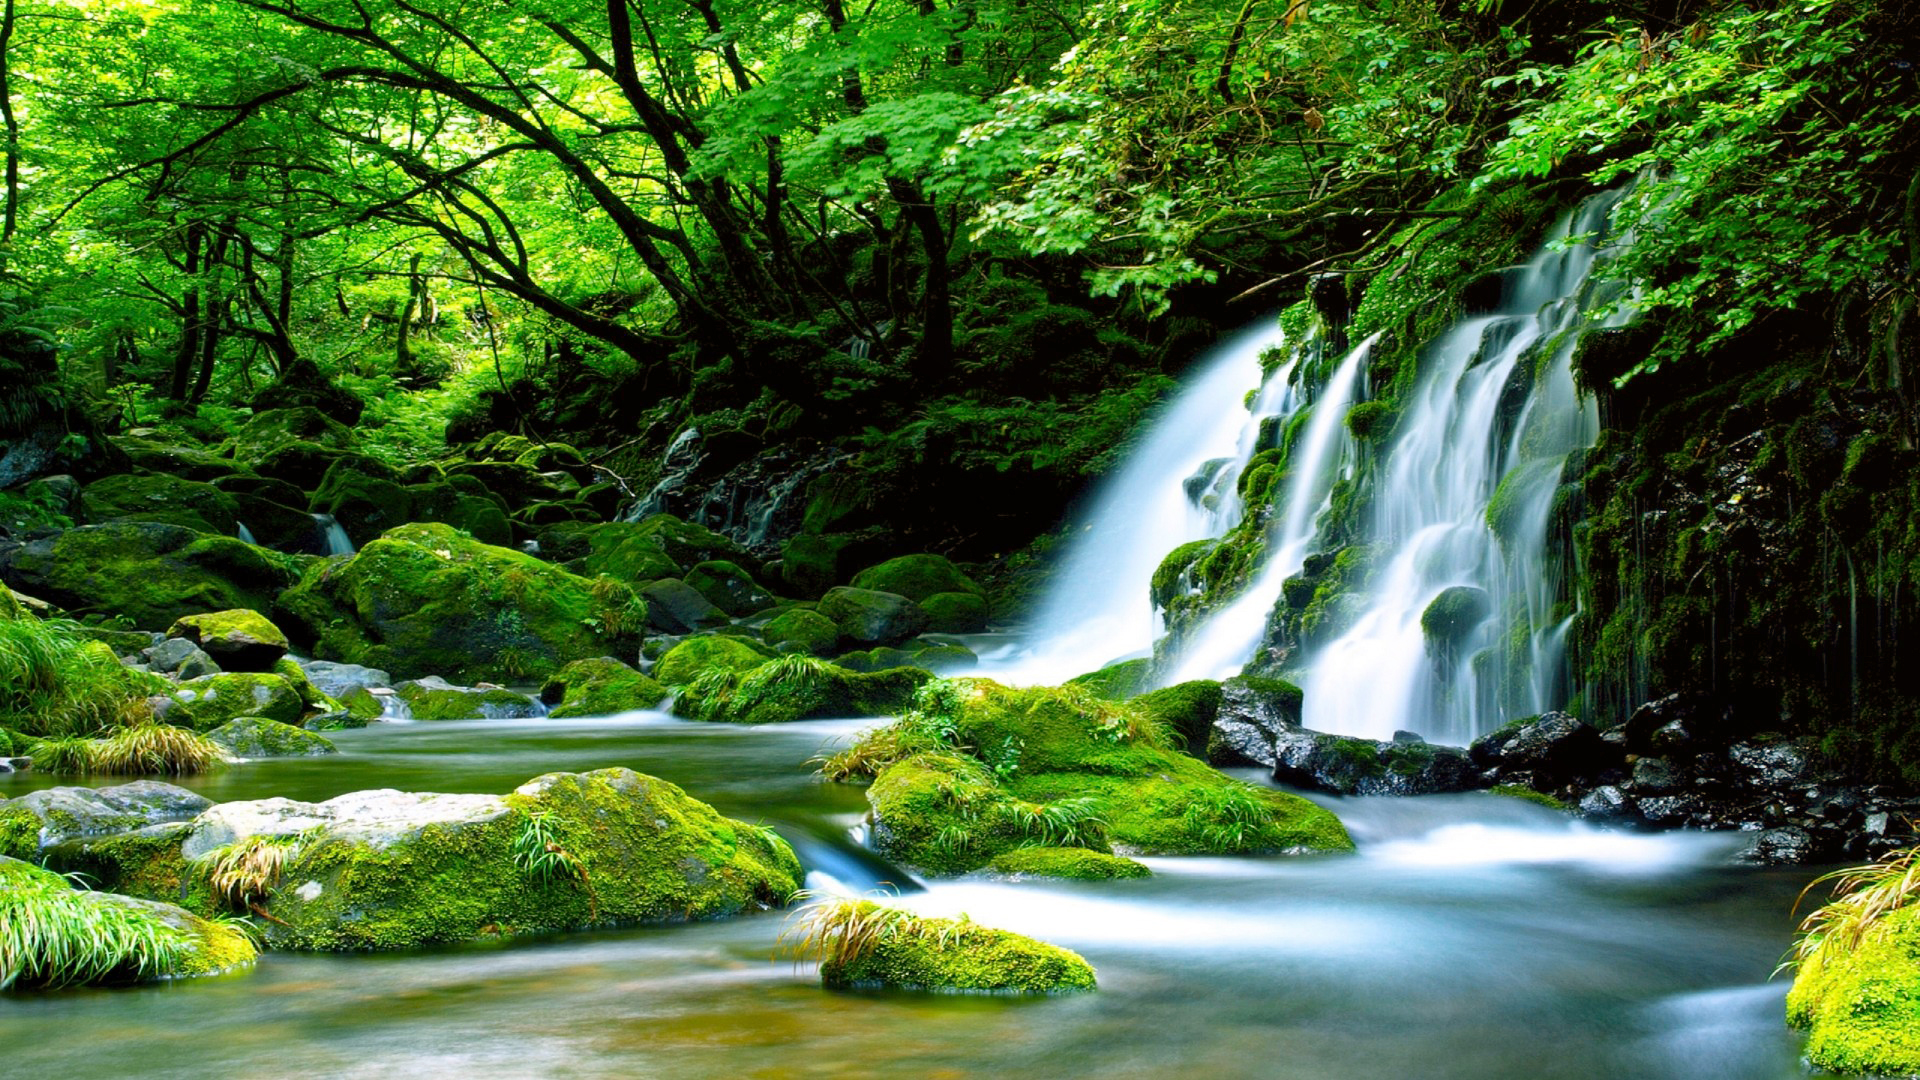 Скачать обои бесплатно Природа, Водопады, Водопад, Лес, Зеленый, Земля/природа картинка на рабочий стол ПК